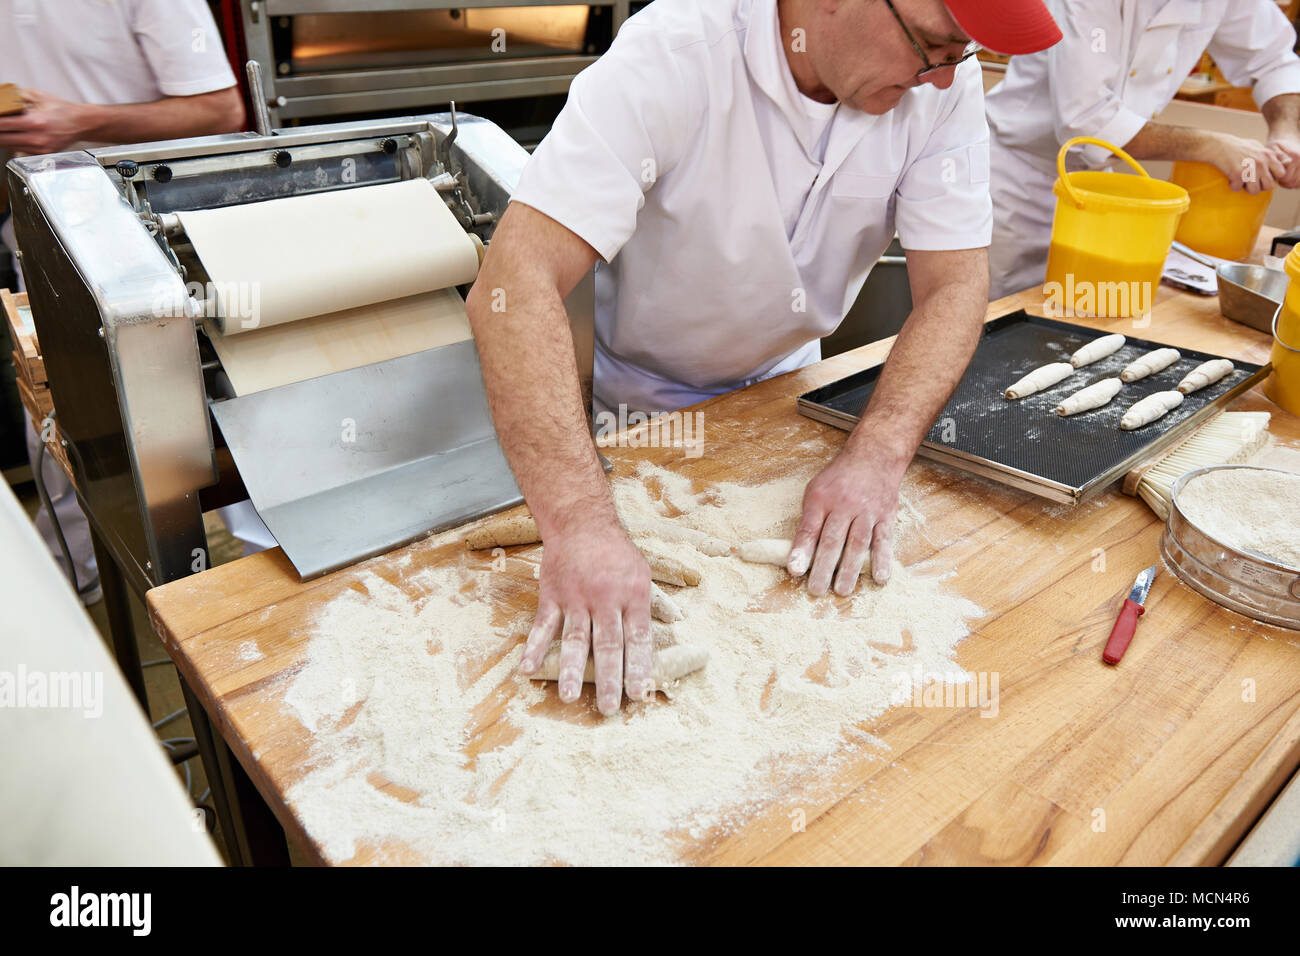 Les pâtissiers boulangers faire cuire la pâte pour rouler sur la table les pains de boulangerie Banque D'Images